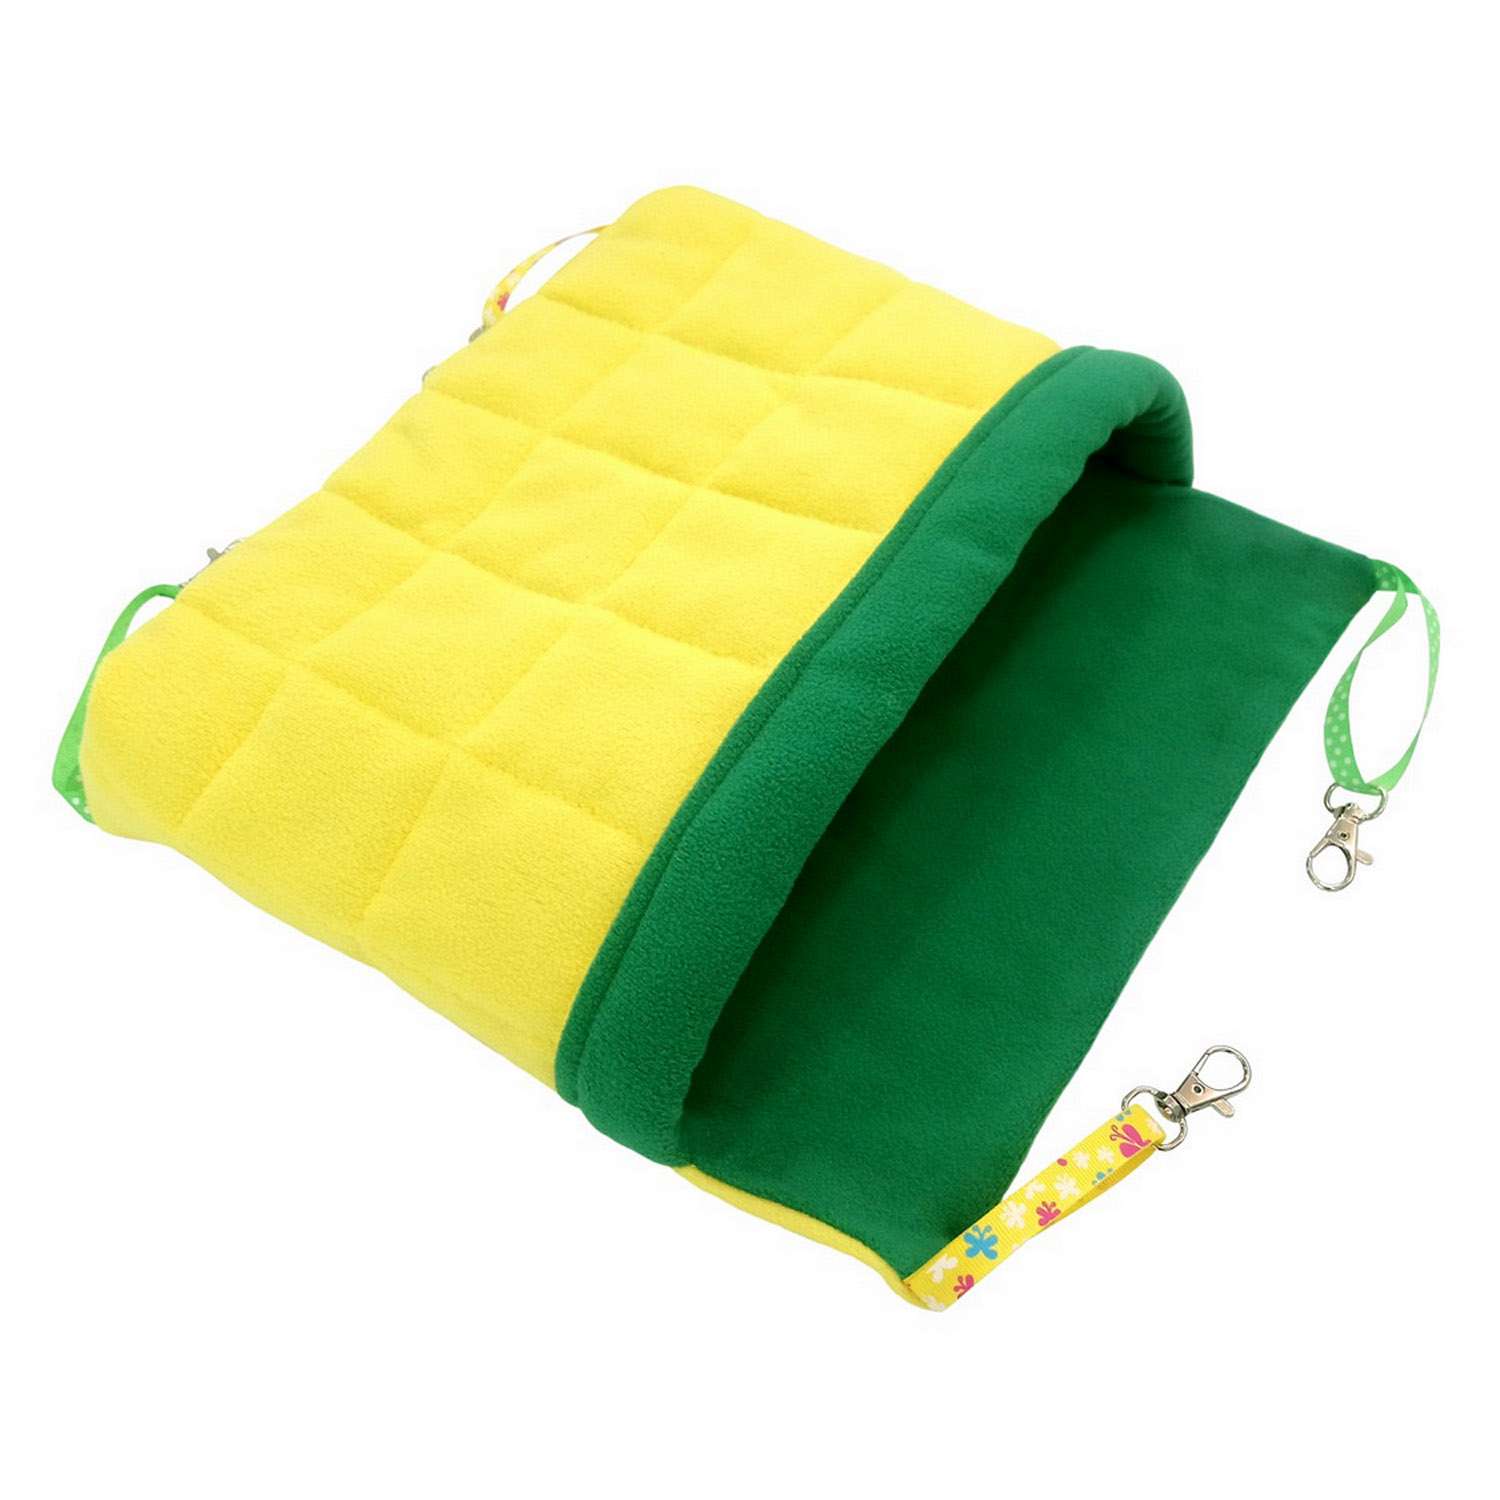 Гамак для хорьков Доброзверики и мелких грызунов с карманом Одеяло размер М желтый-зеленый - фото 1